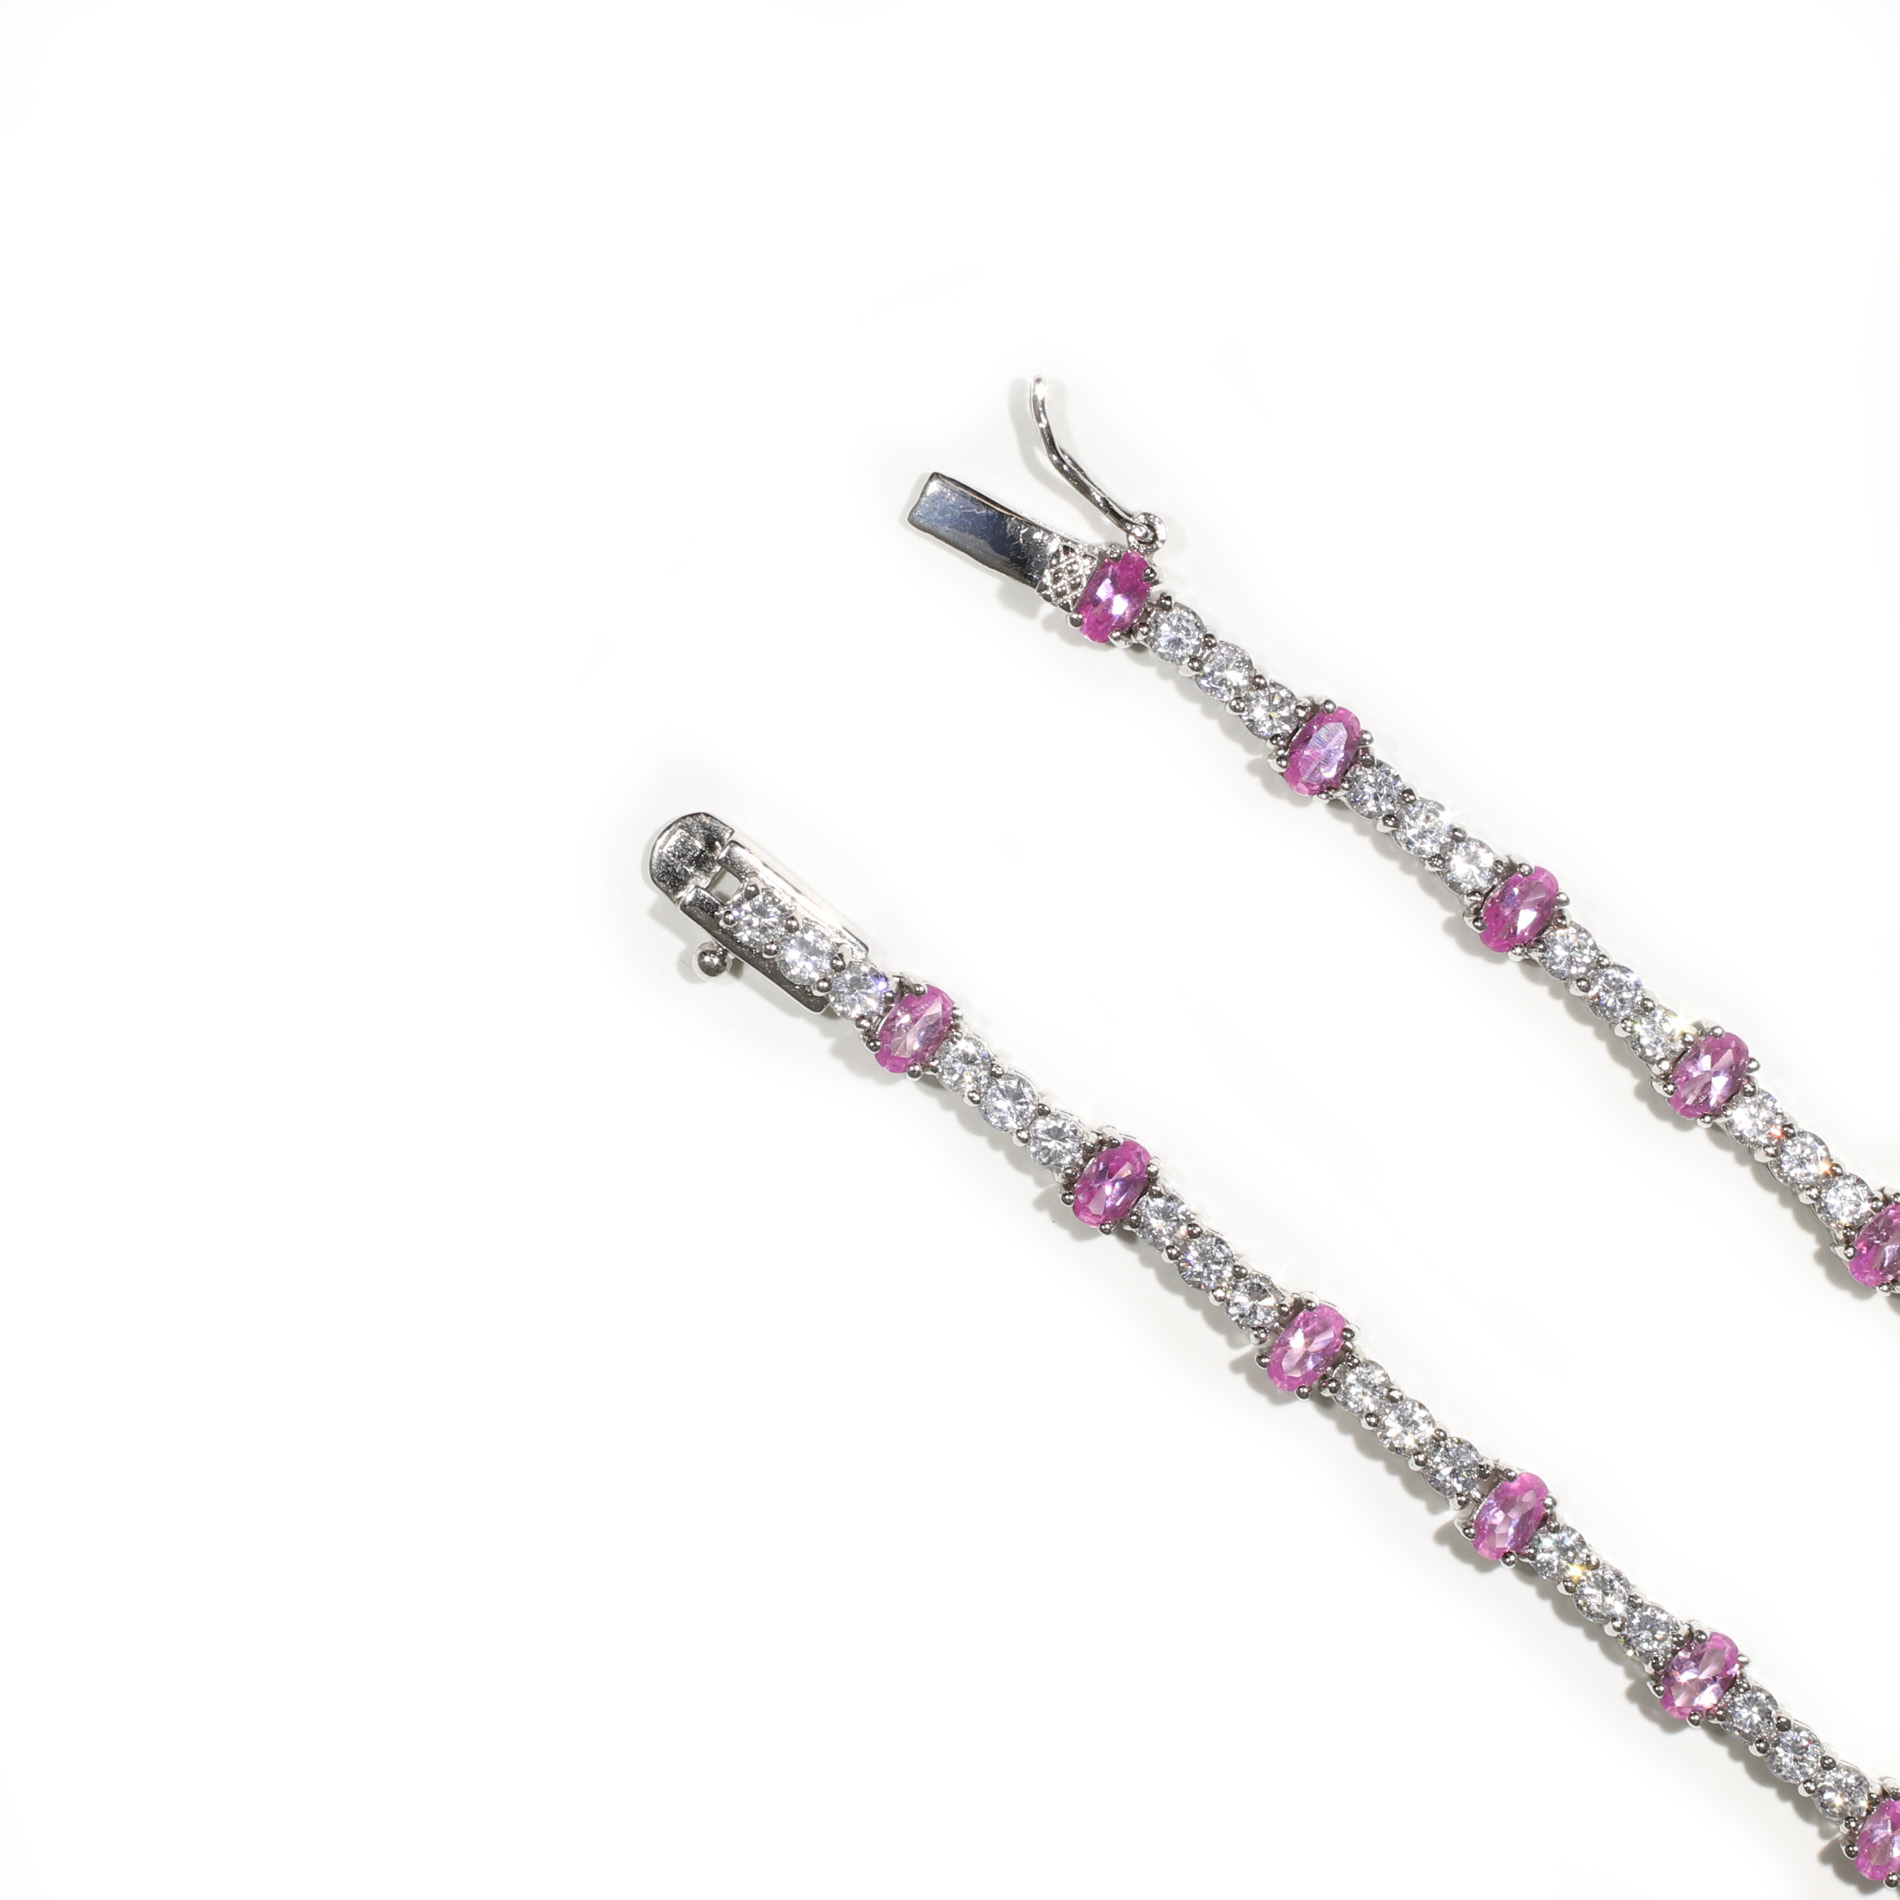 Tamara G Designs | Pink Sapphire Chandelier Necklace